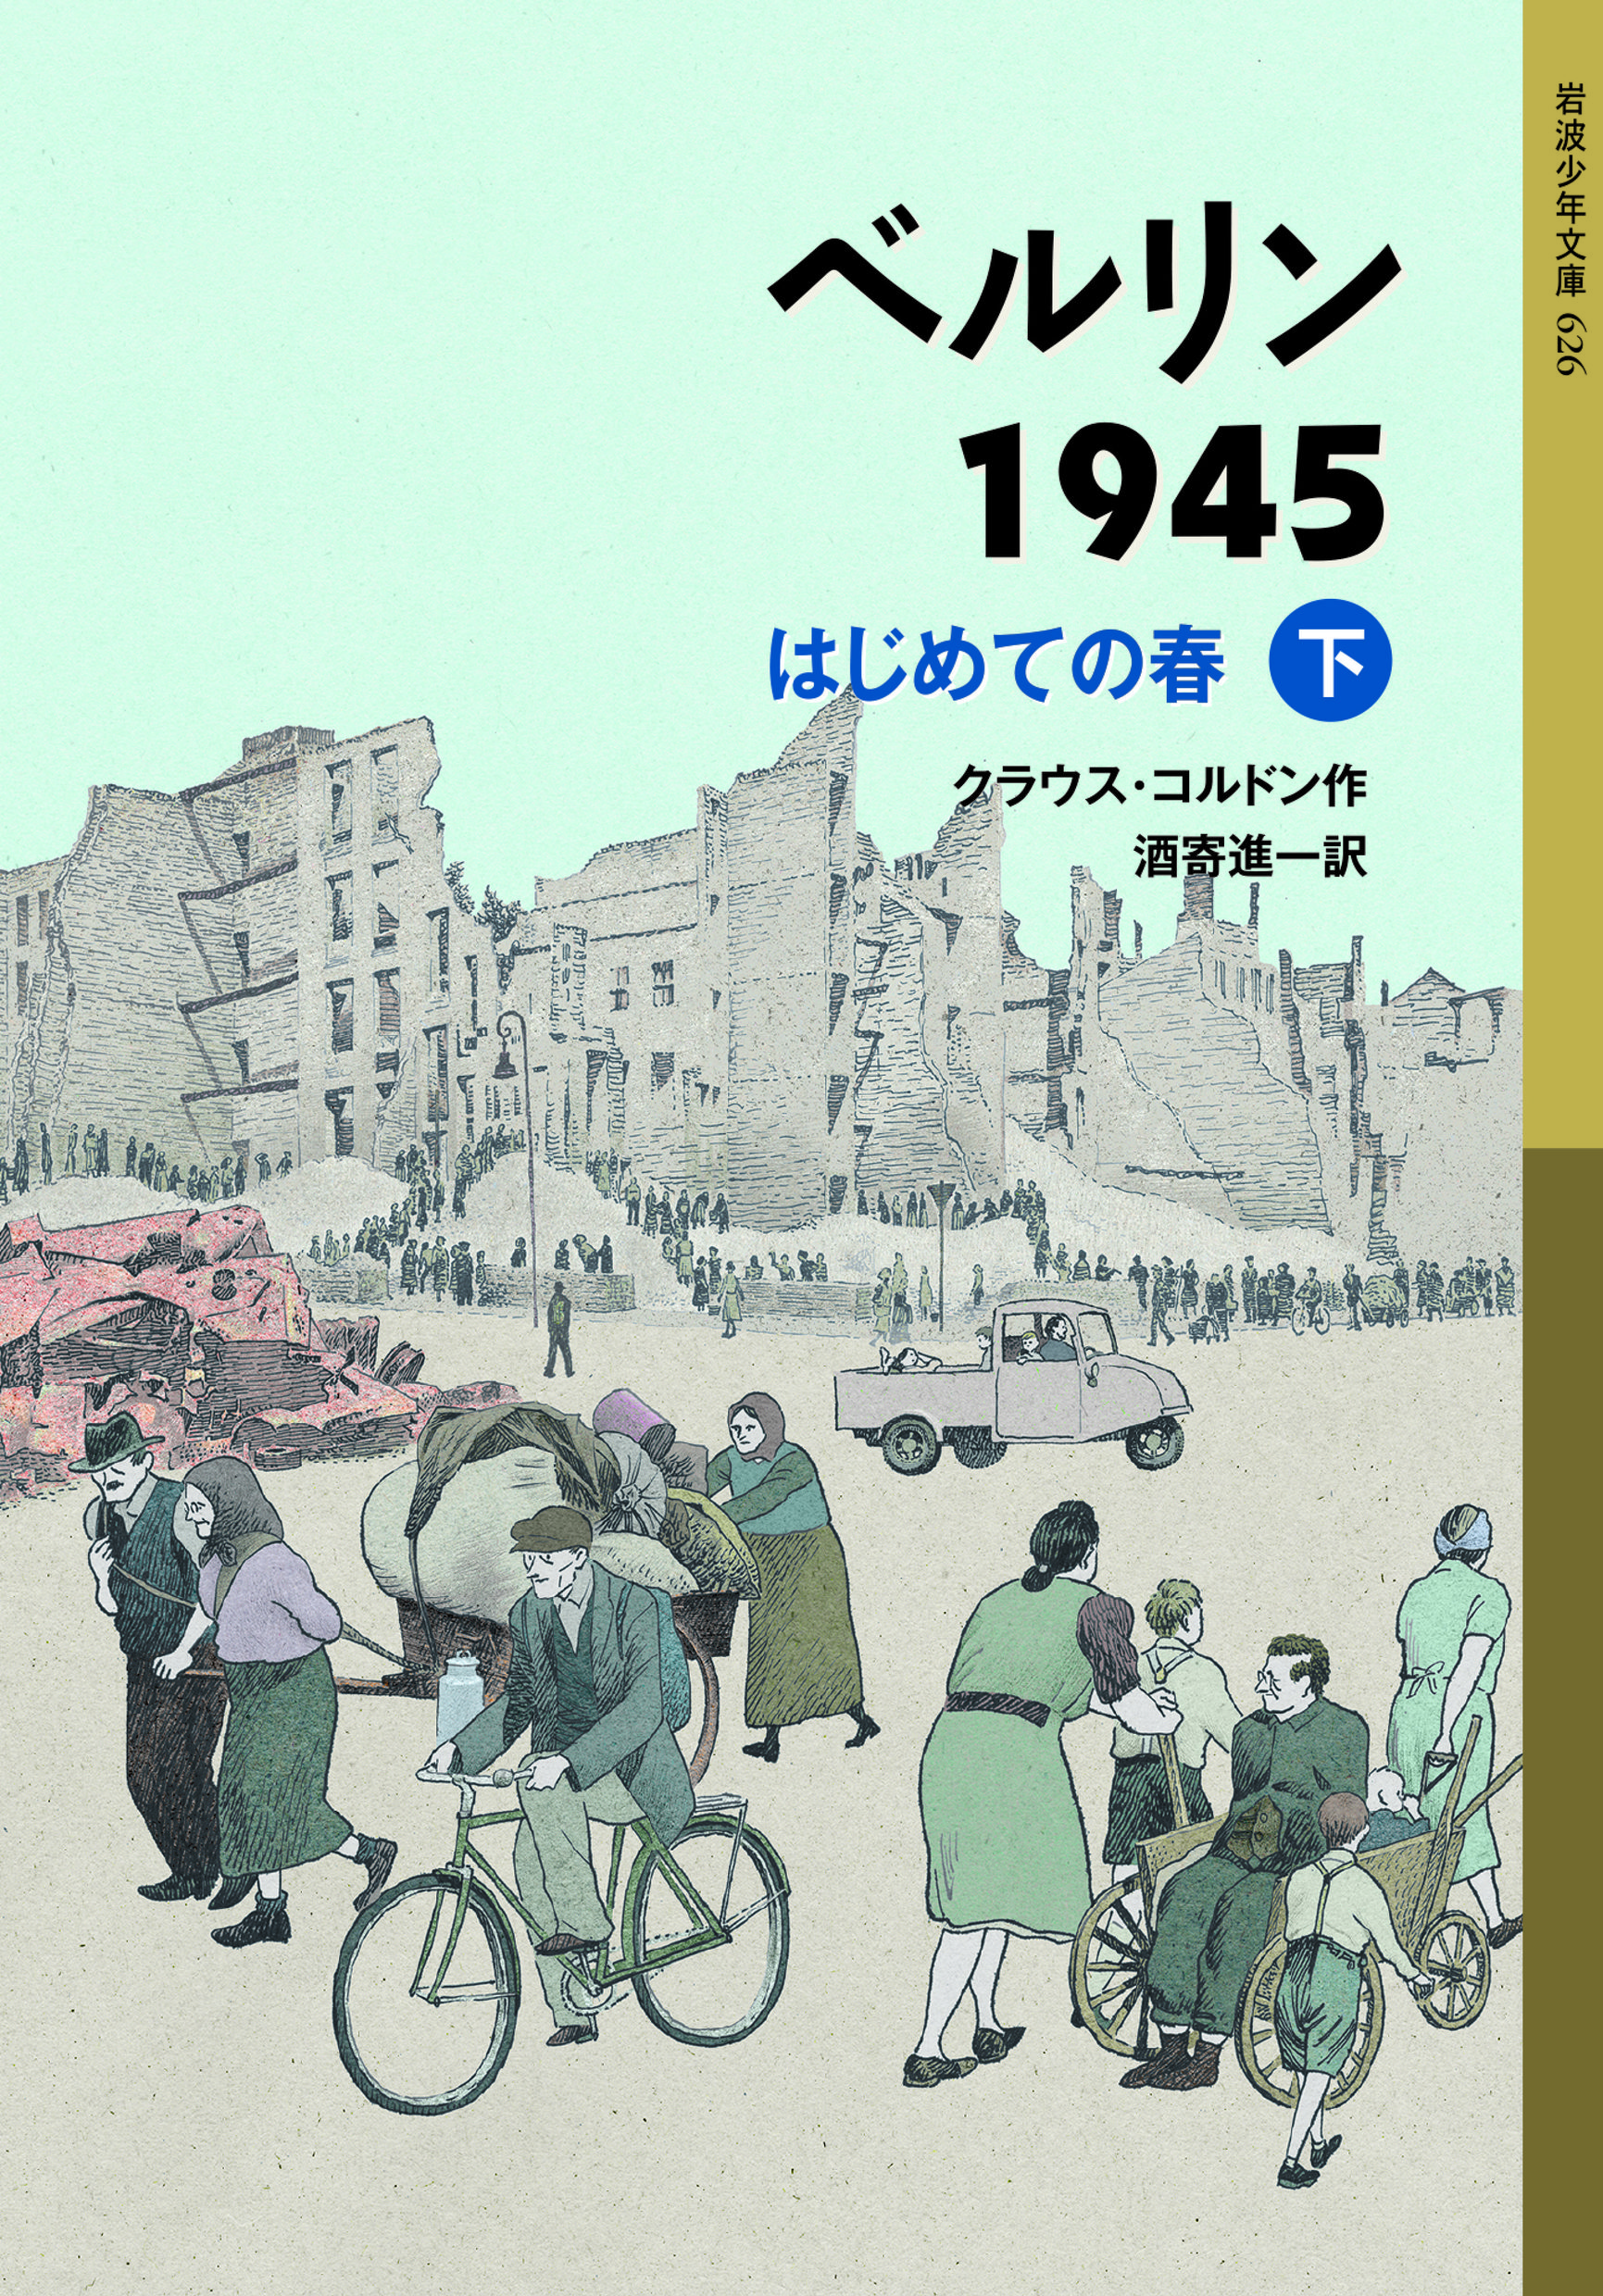 ベルリン1945 はじめての春 (下)の商品画像